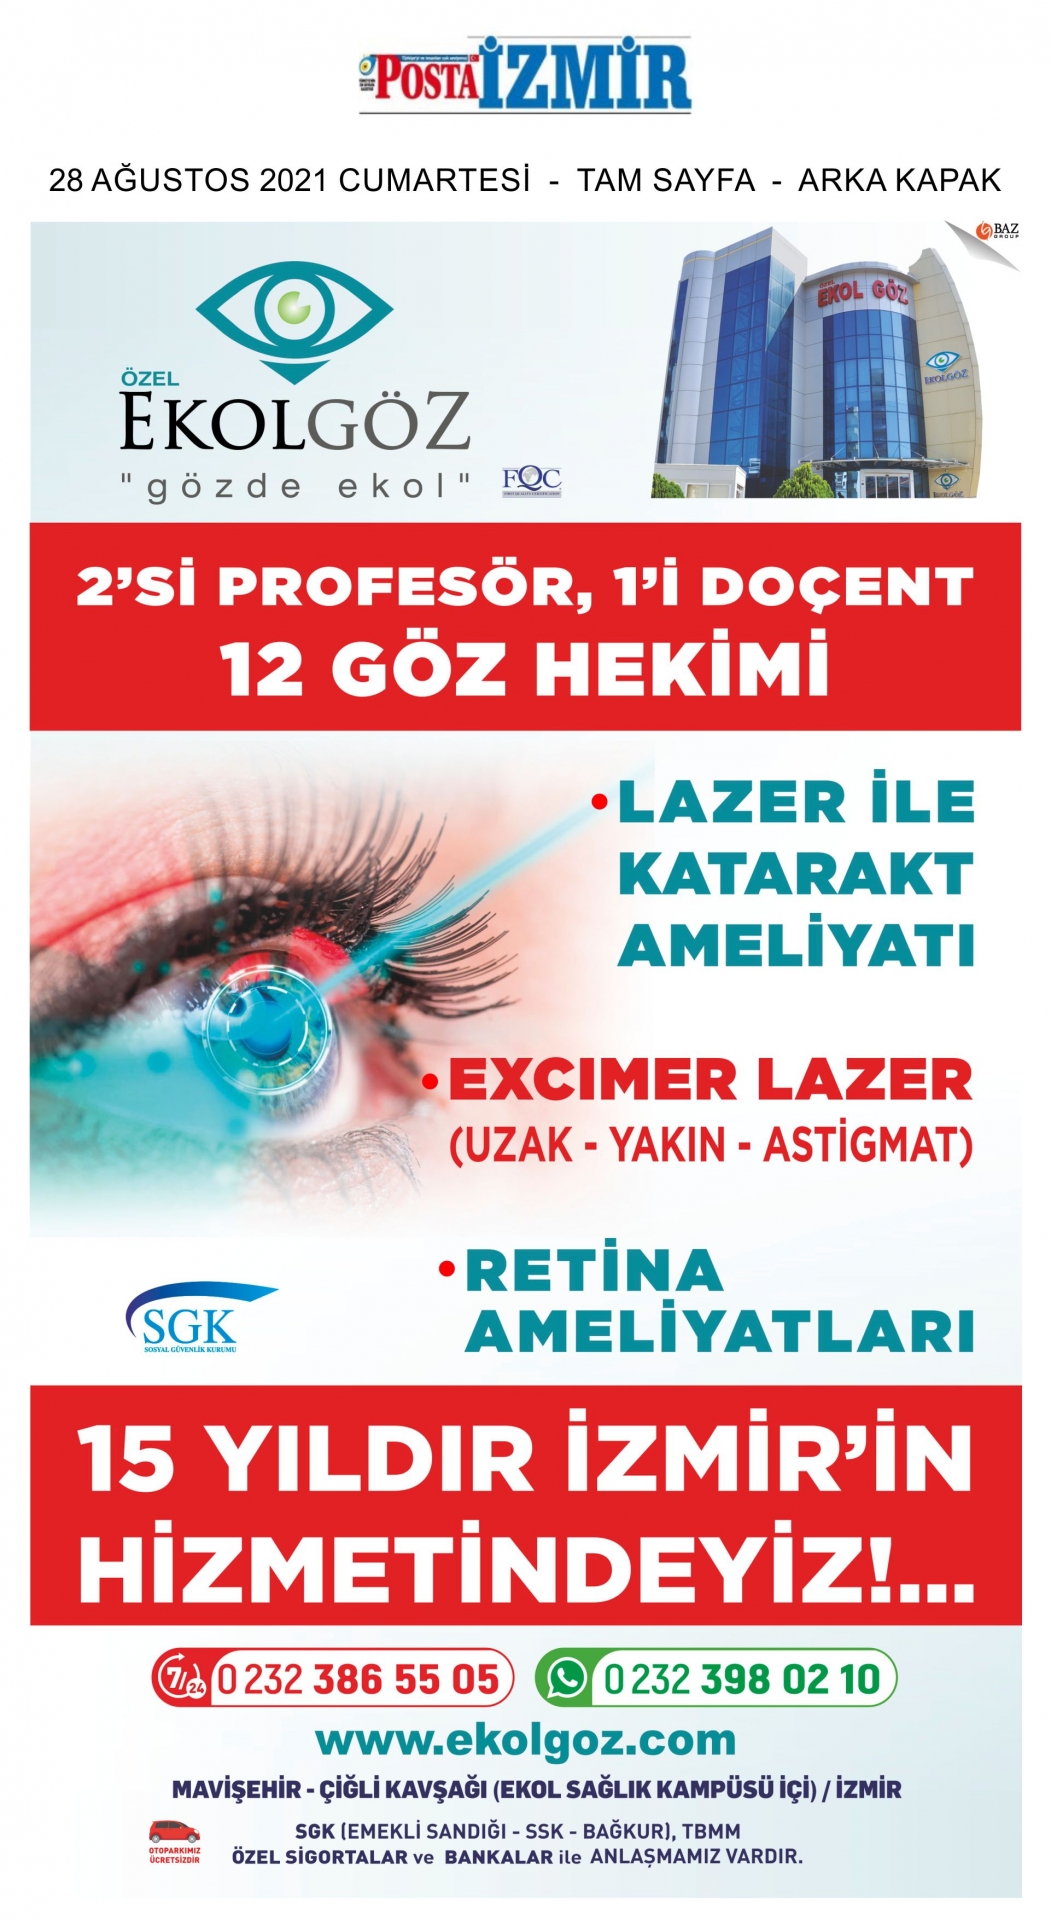 28/08/2021 - Posta İzmir